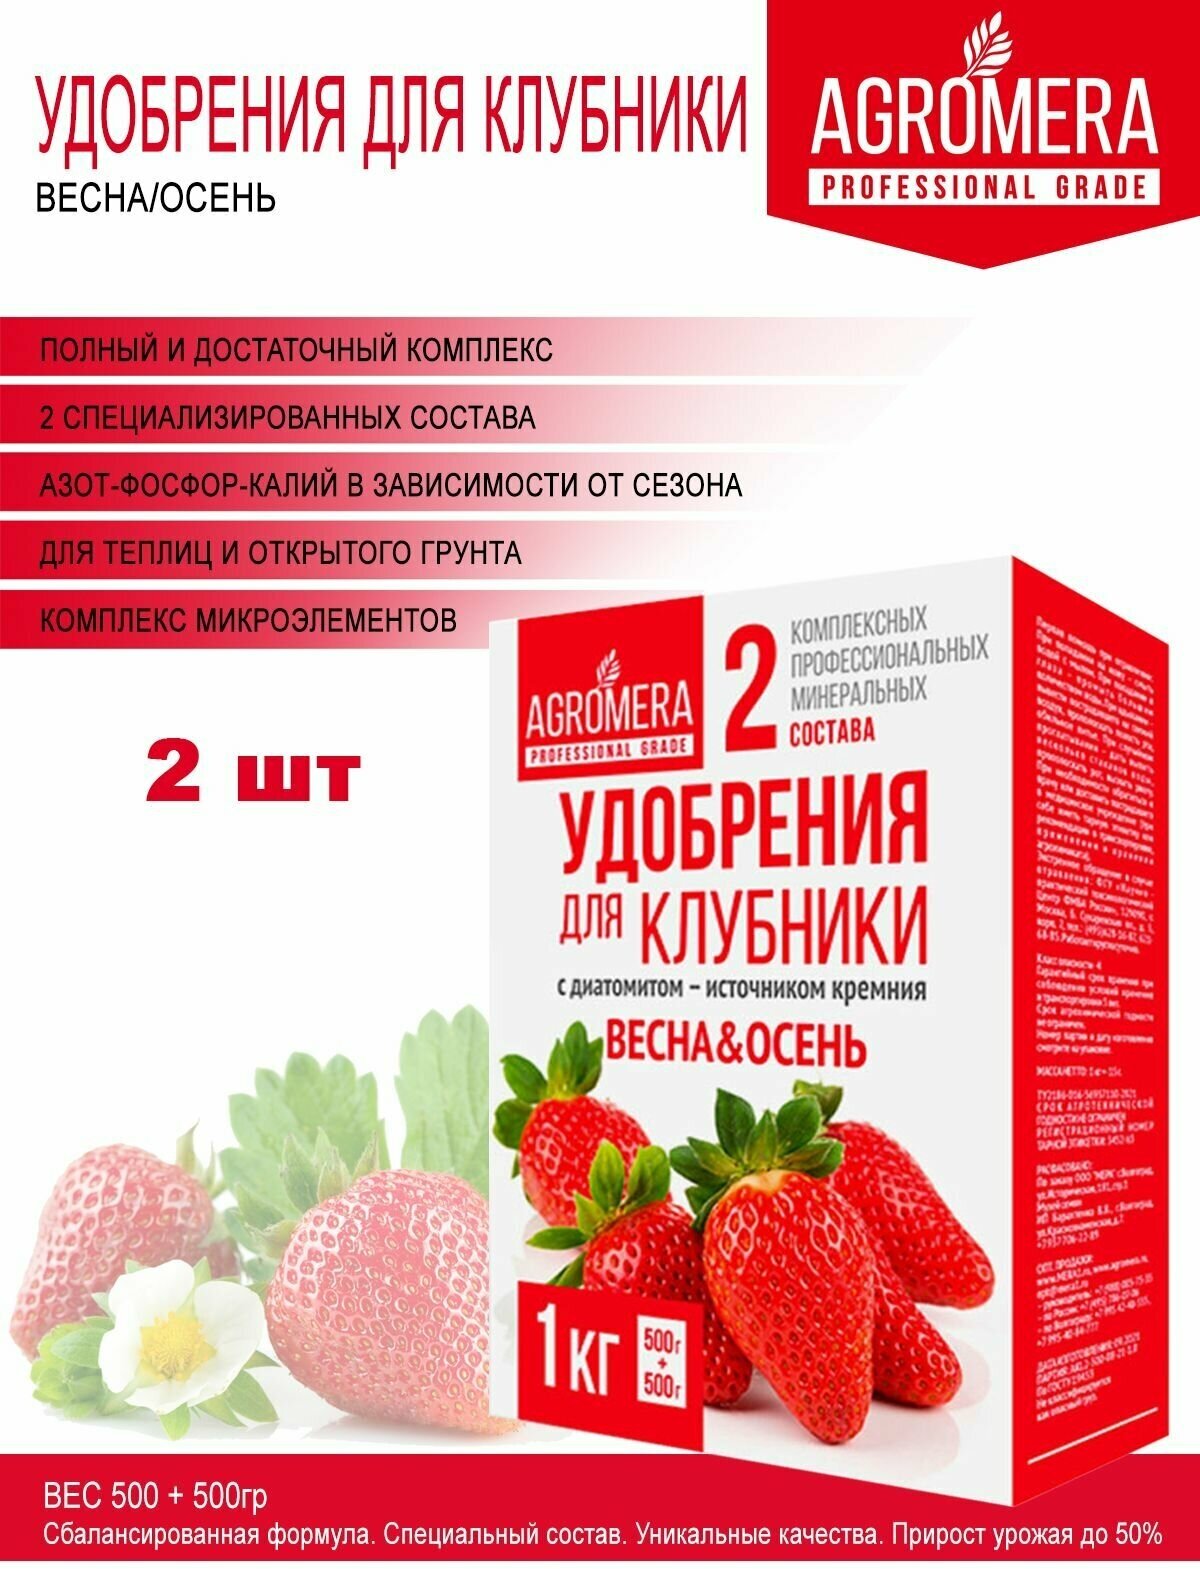 Удобрение комплексное весна, осень для клубники/ земляники 2 шт — купить винтернет-магазине по низкой цене на Яндекс Маркете